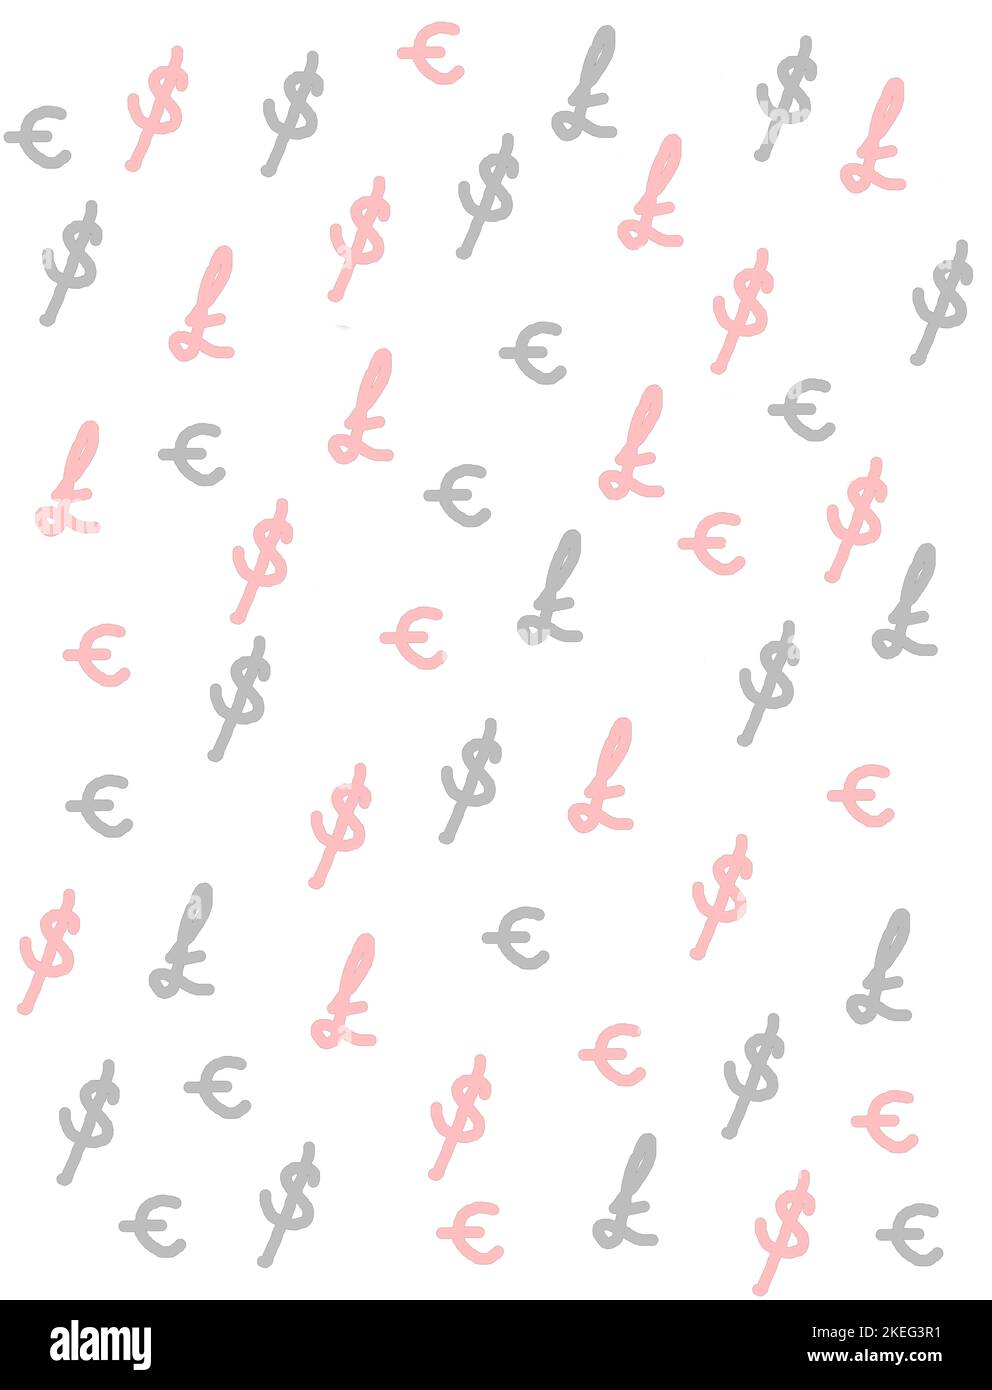 Les symboles livre, dollar et euro en gris et rouge pâle servent à créer un arrière-plan illustrant les taux de change, l'économie, la finance et la comparaison. Banque D'Images